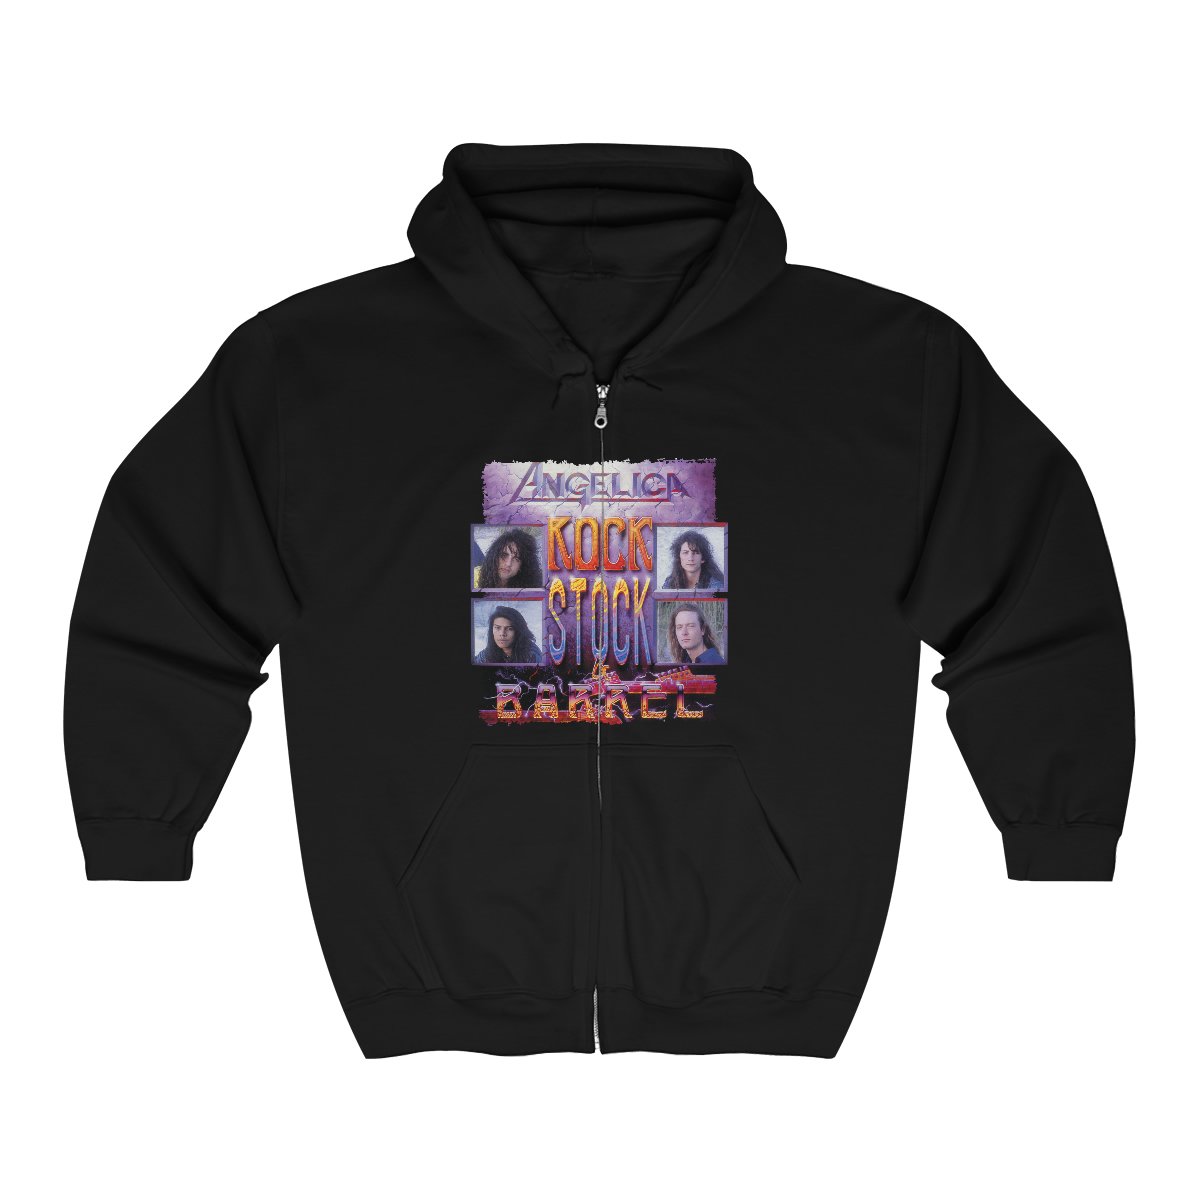 Angelica – Rock Stock & Barrel Full Zip Hooded Sweatshirt 186MD